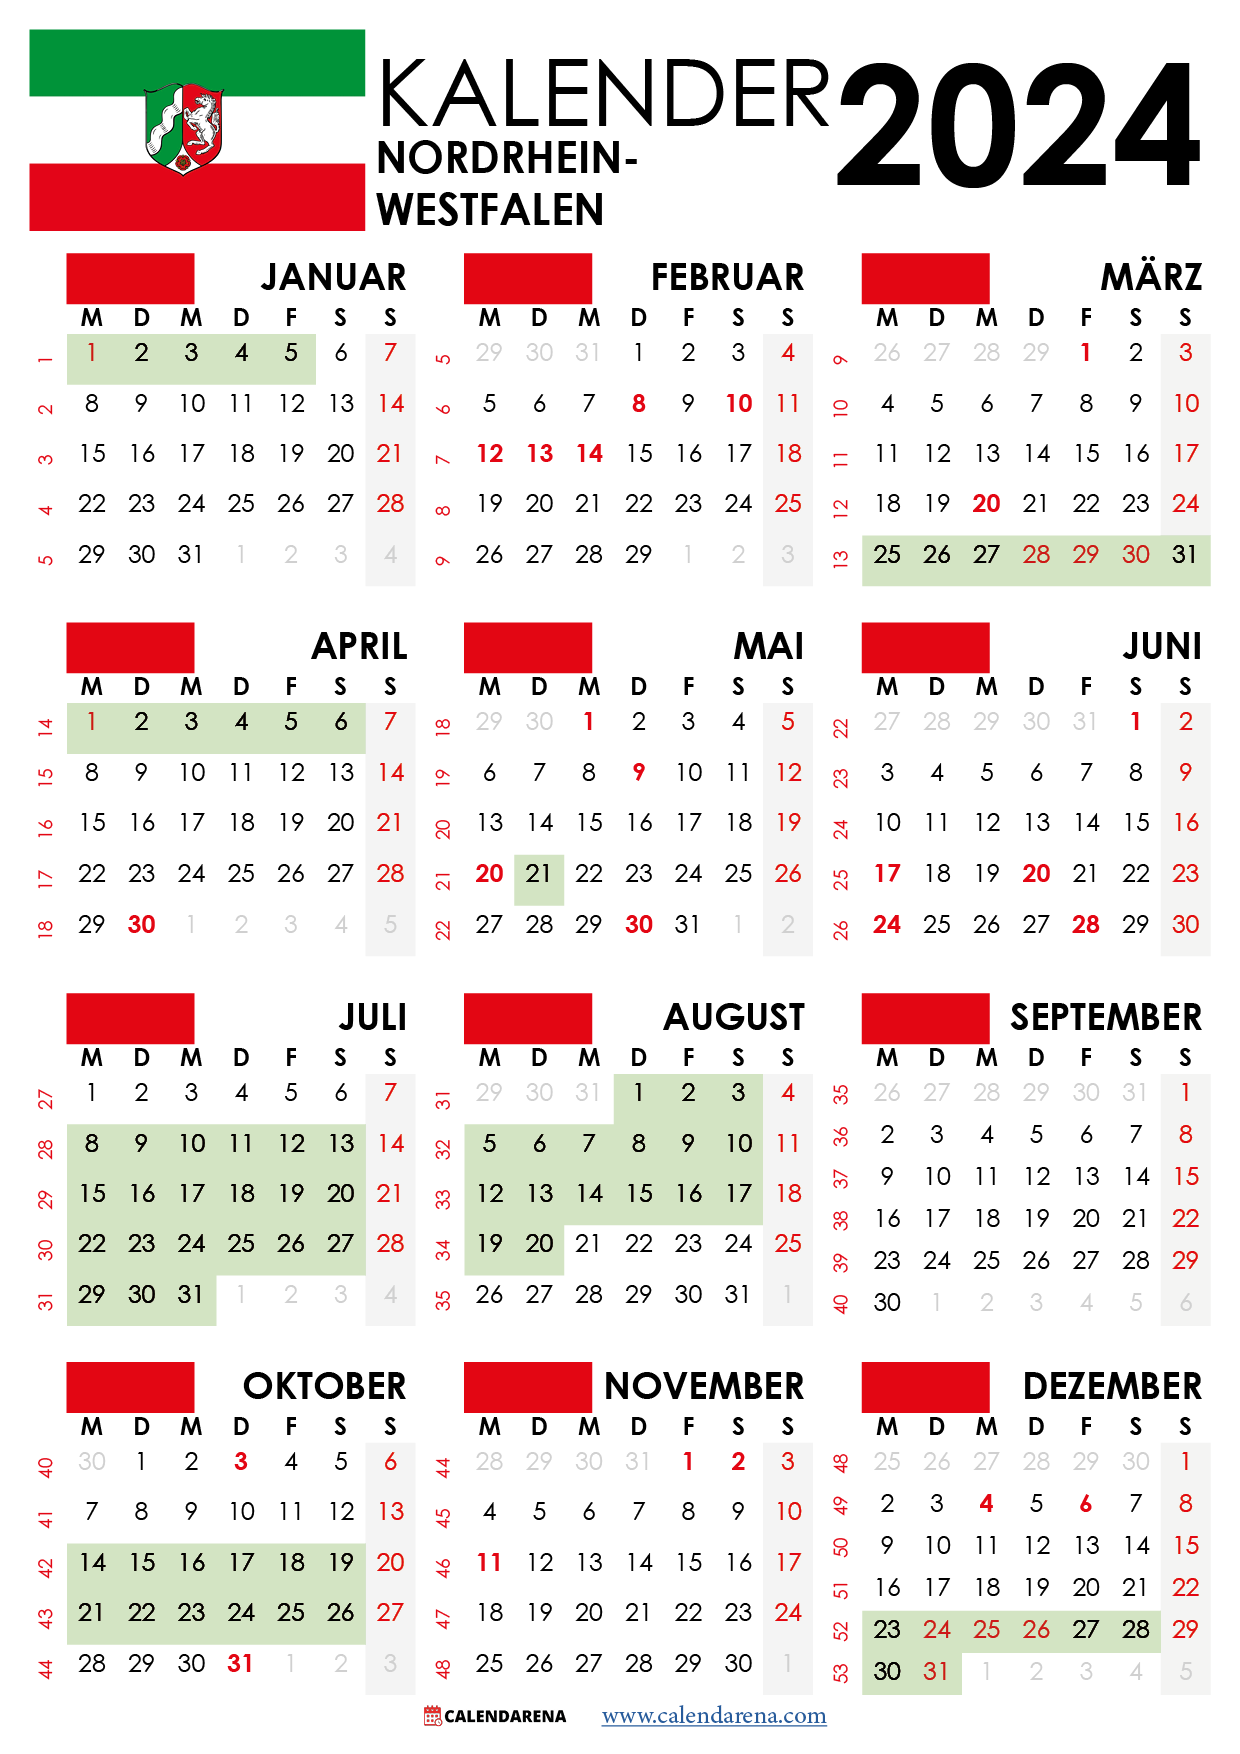 kalender NRW 2024